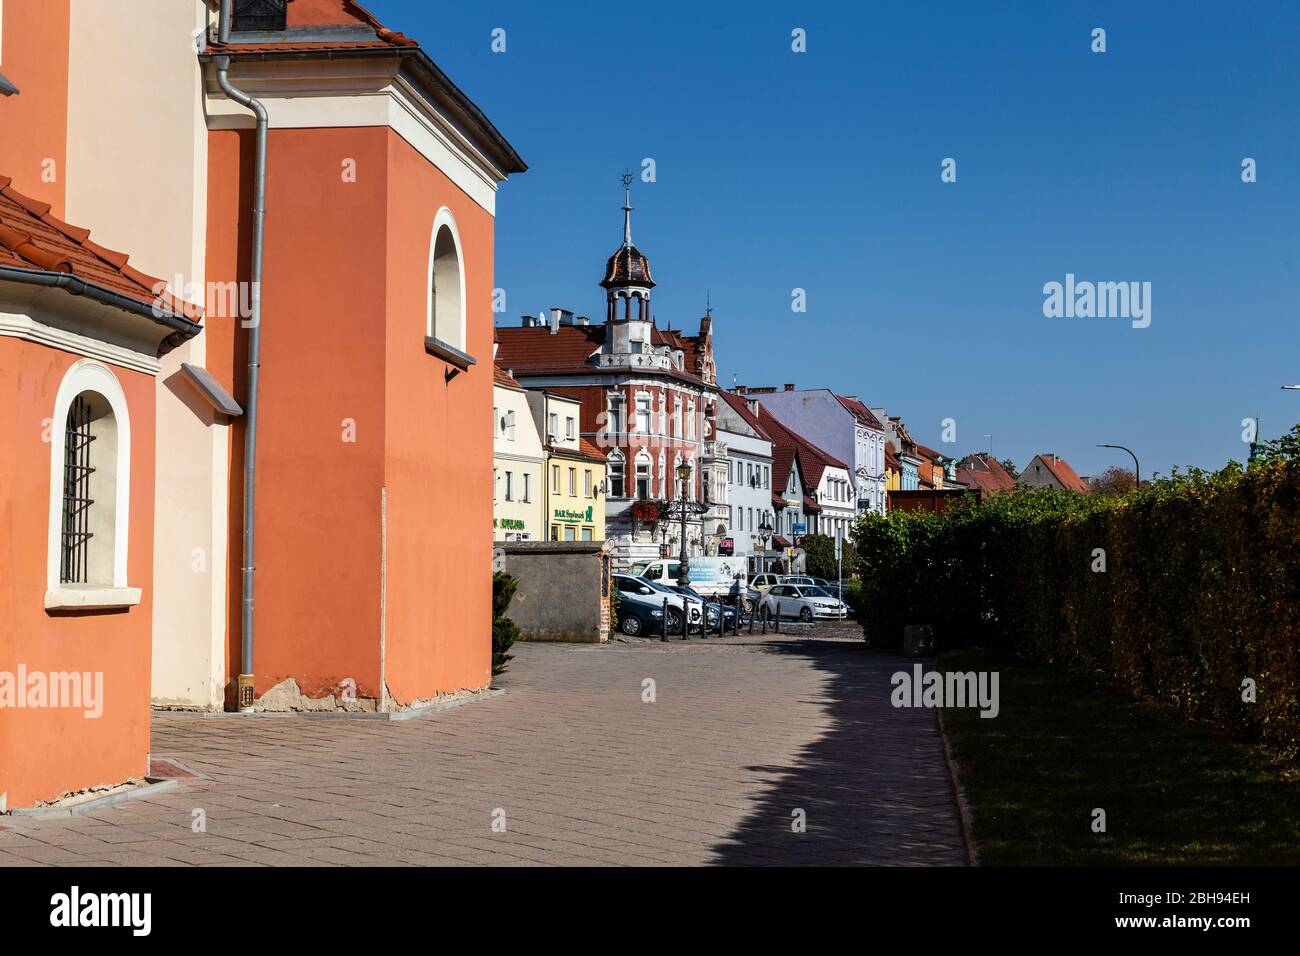 Europe, Poland, Opole Voivodeship, Niemodlin / Falkenberg Stock Photo